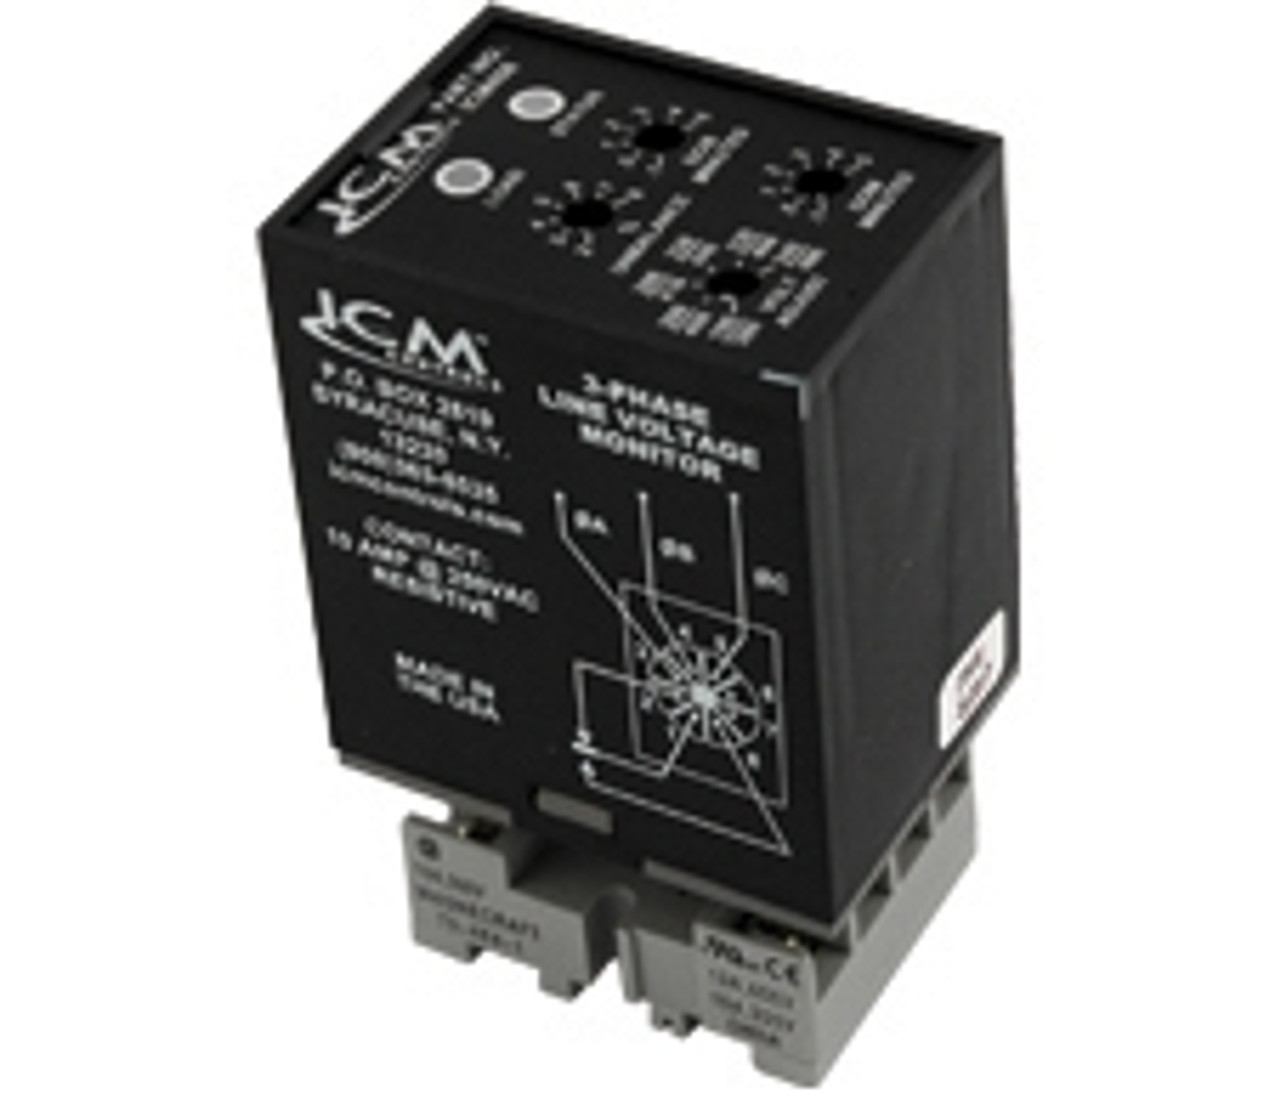 ICM ICM408 3-Phase Monitor, Adjustable 190-480 VAC, plug-in style.